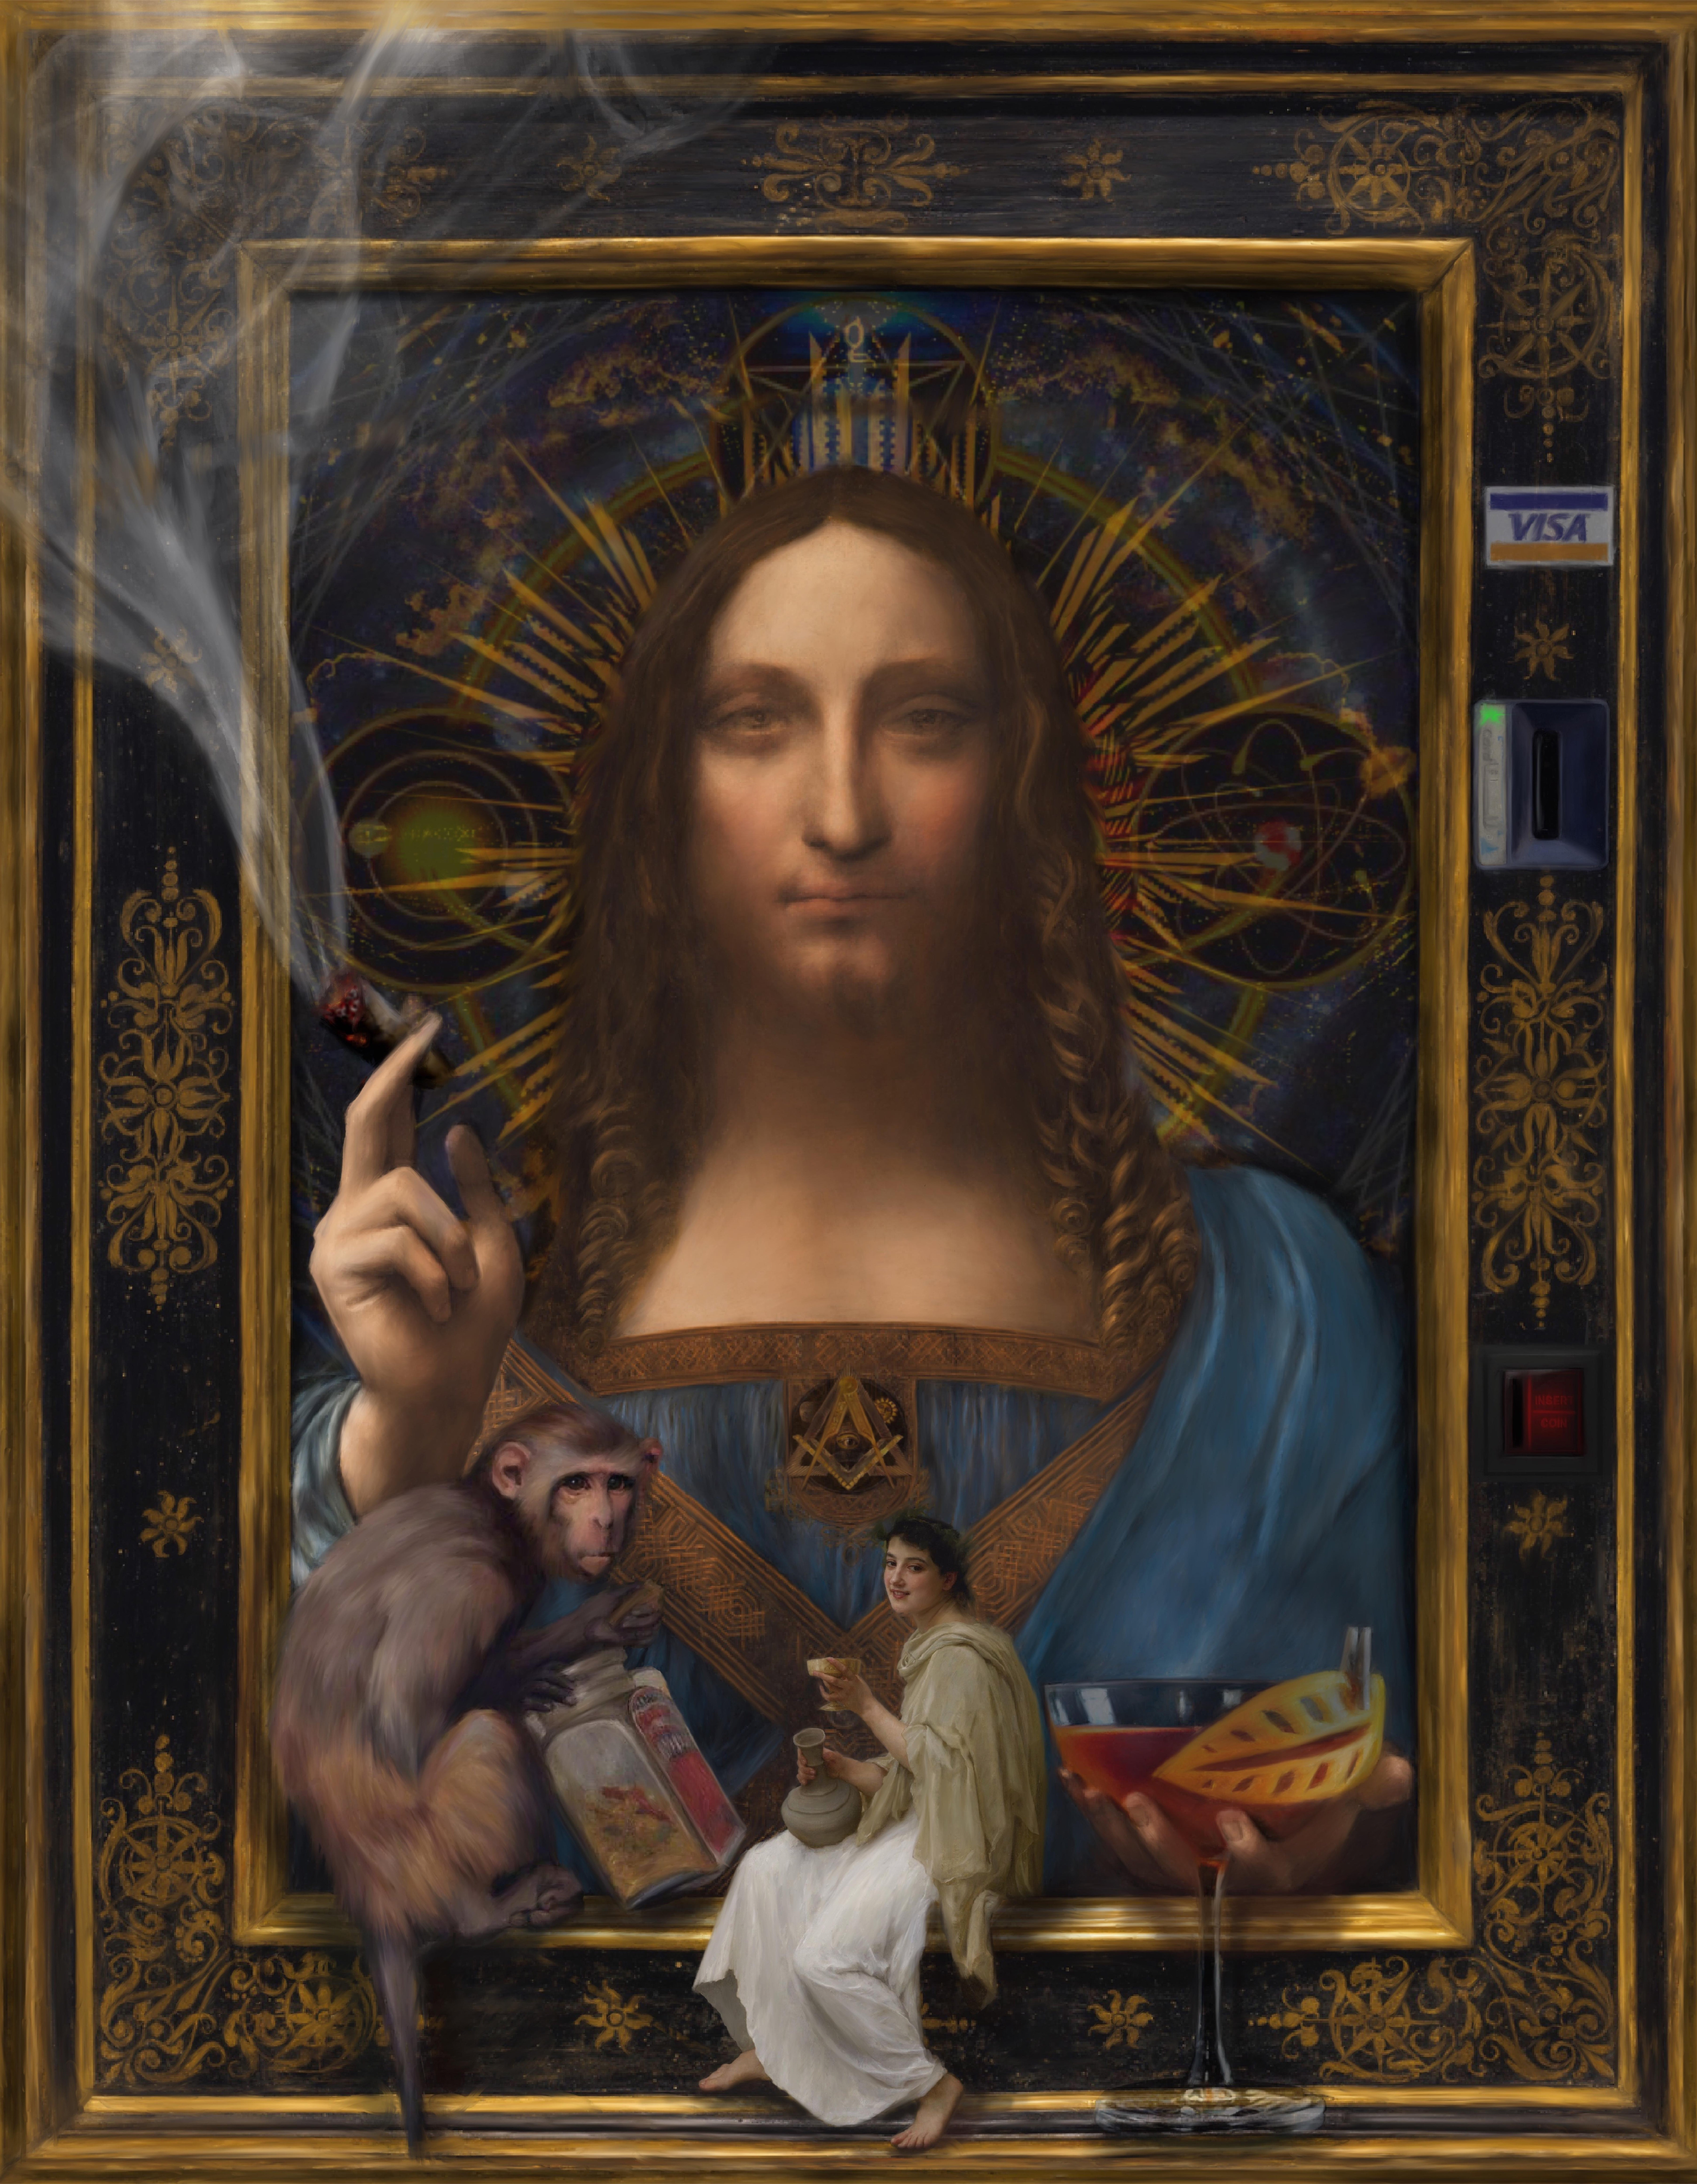 Chamán. Portrait surréaliste et ironique inspiré du Salvator Mundi de Da Vinci.